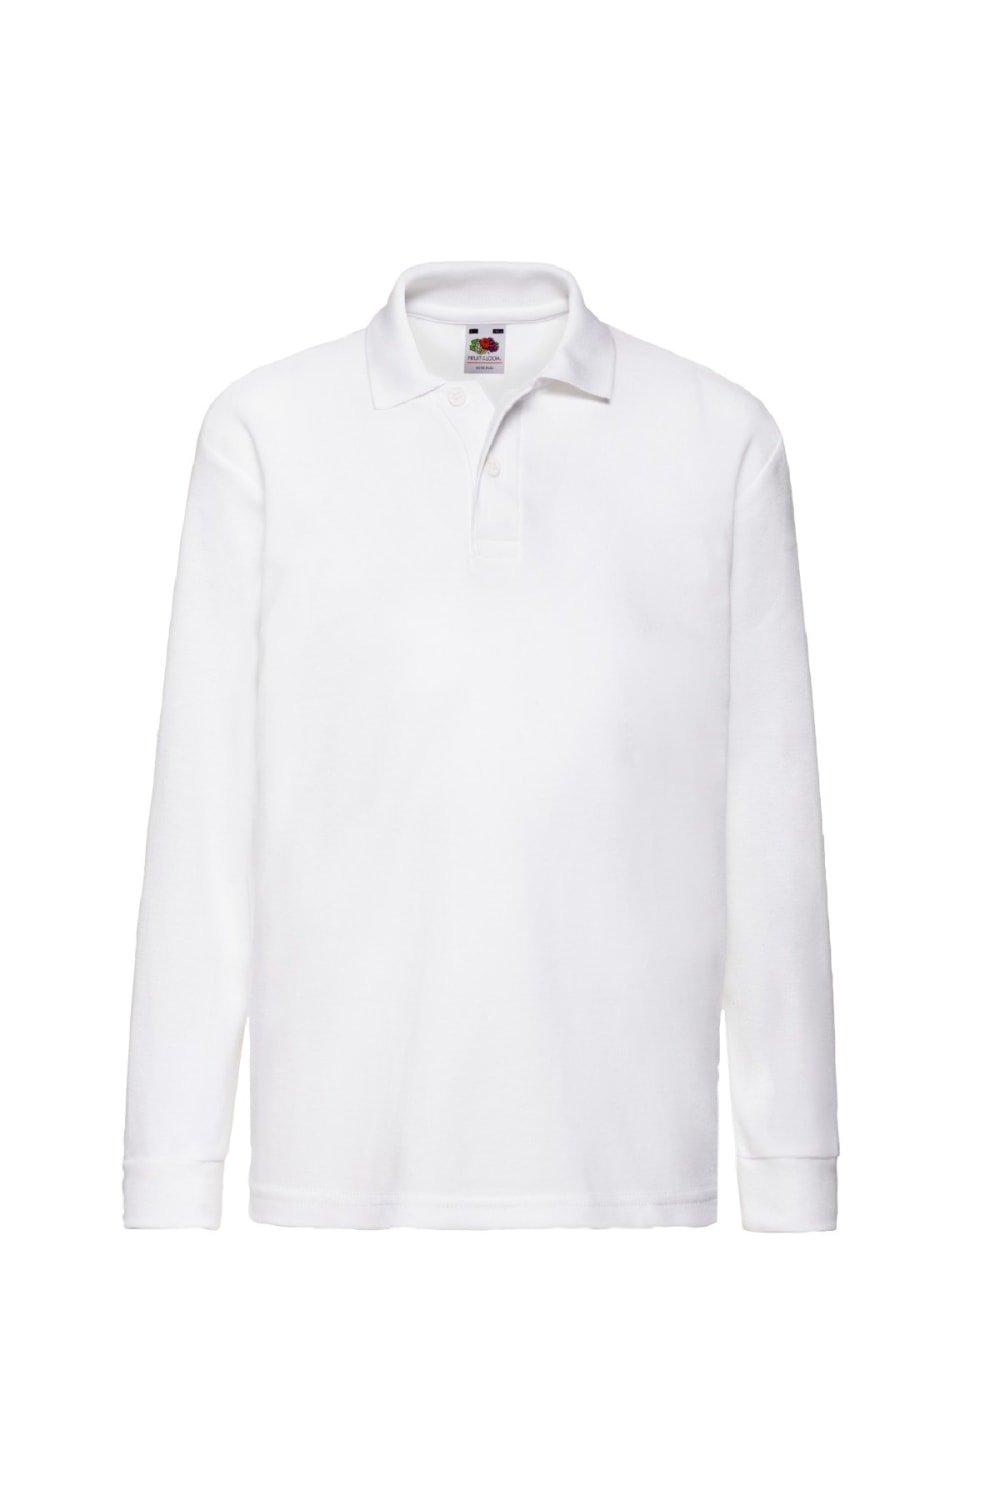 Рубашки-поло/рубашки-поло из пике с длинными рукавами 65/35 (2 шт. в упаковке) Fruit of the Loom, белый